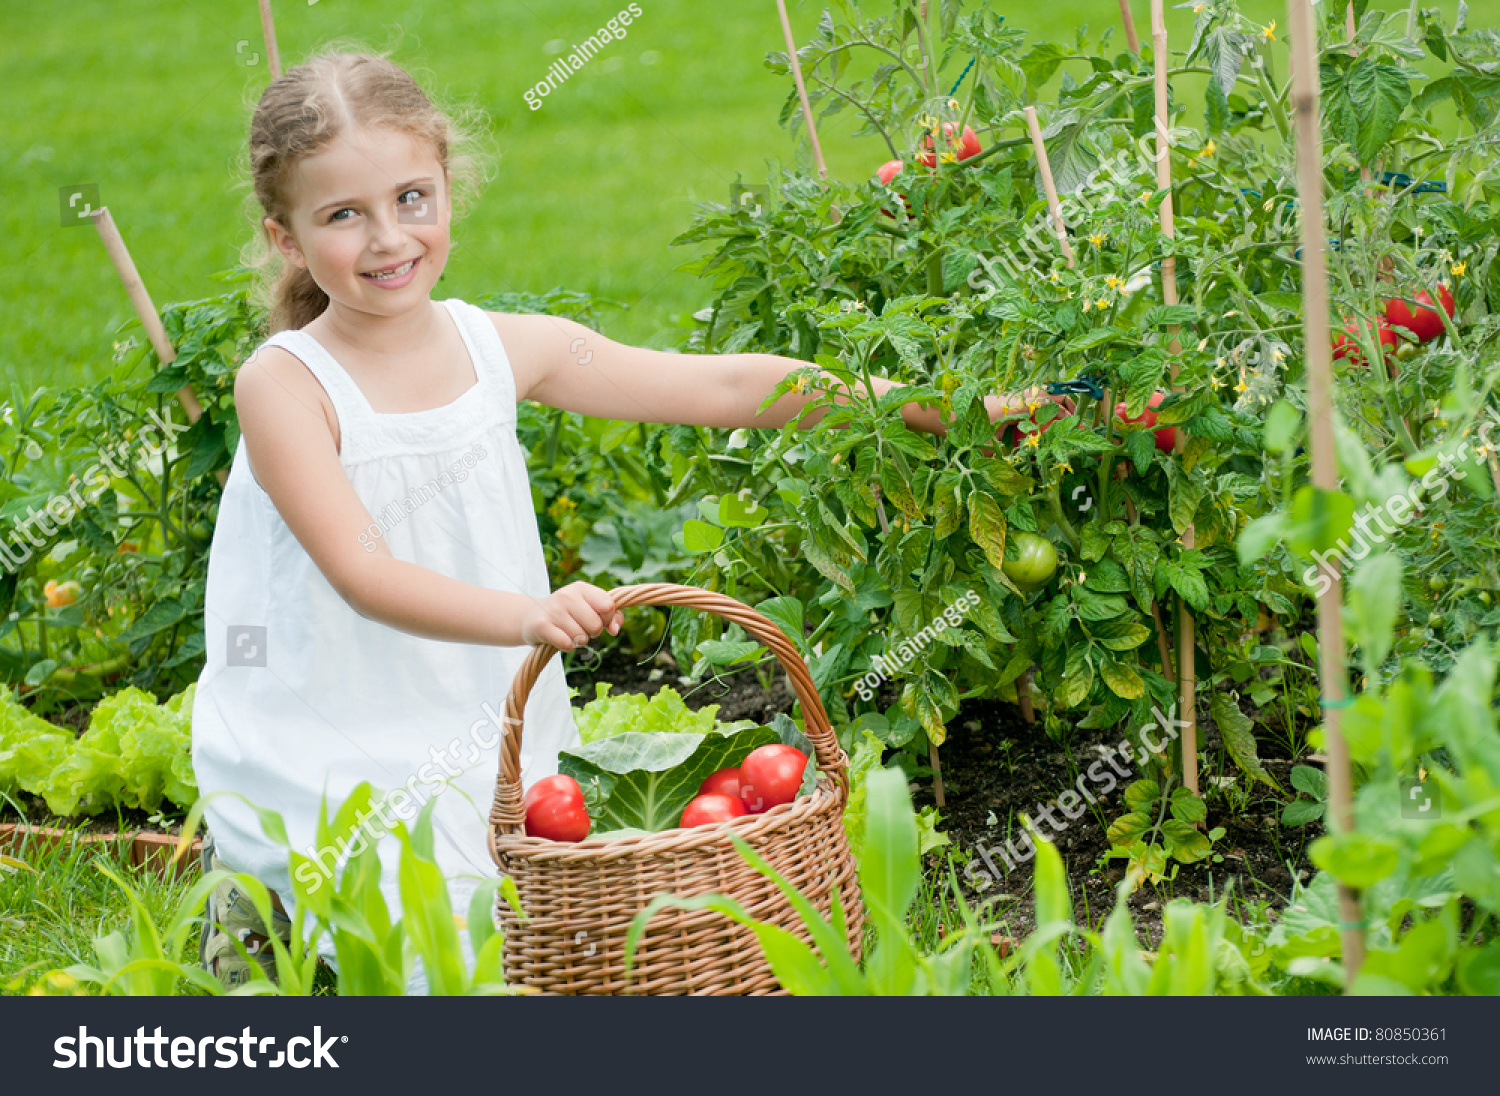 Vegetable Garden Little Girl Picking Ripe Stock Photo 80850361 ...